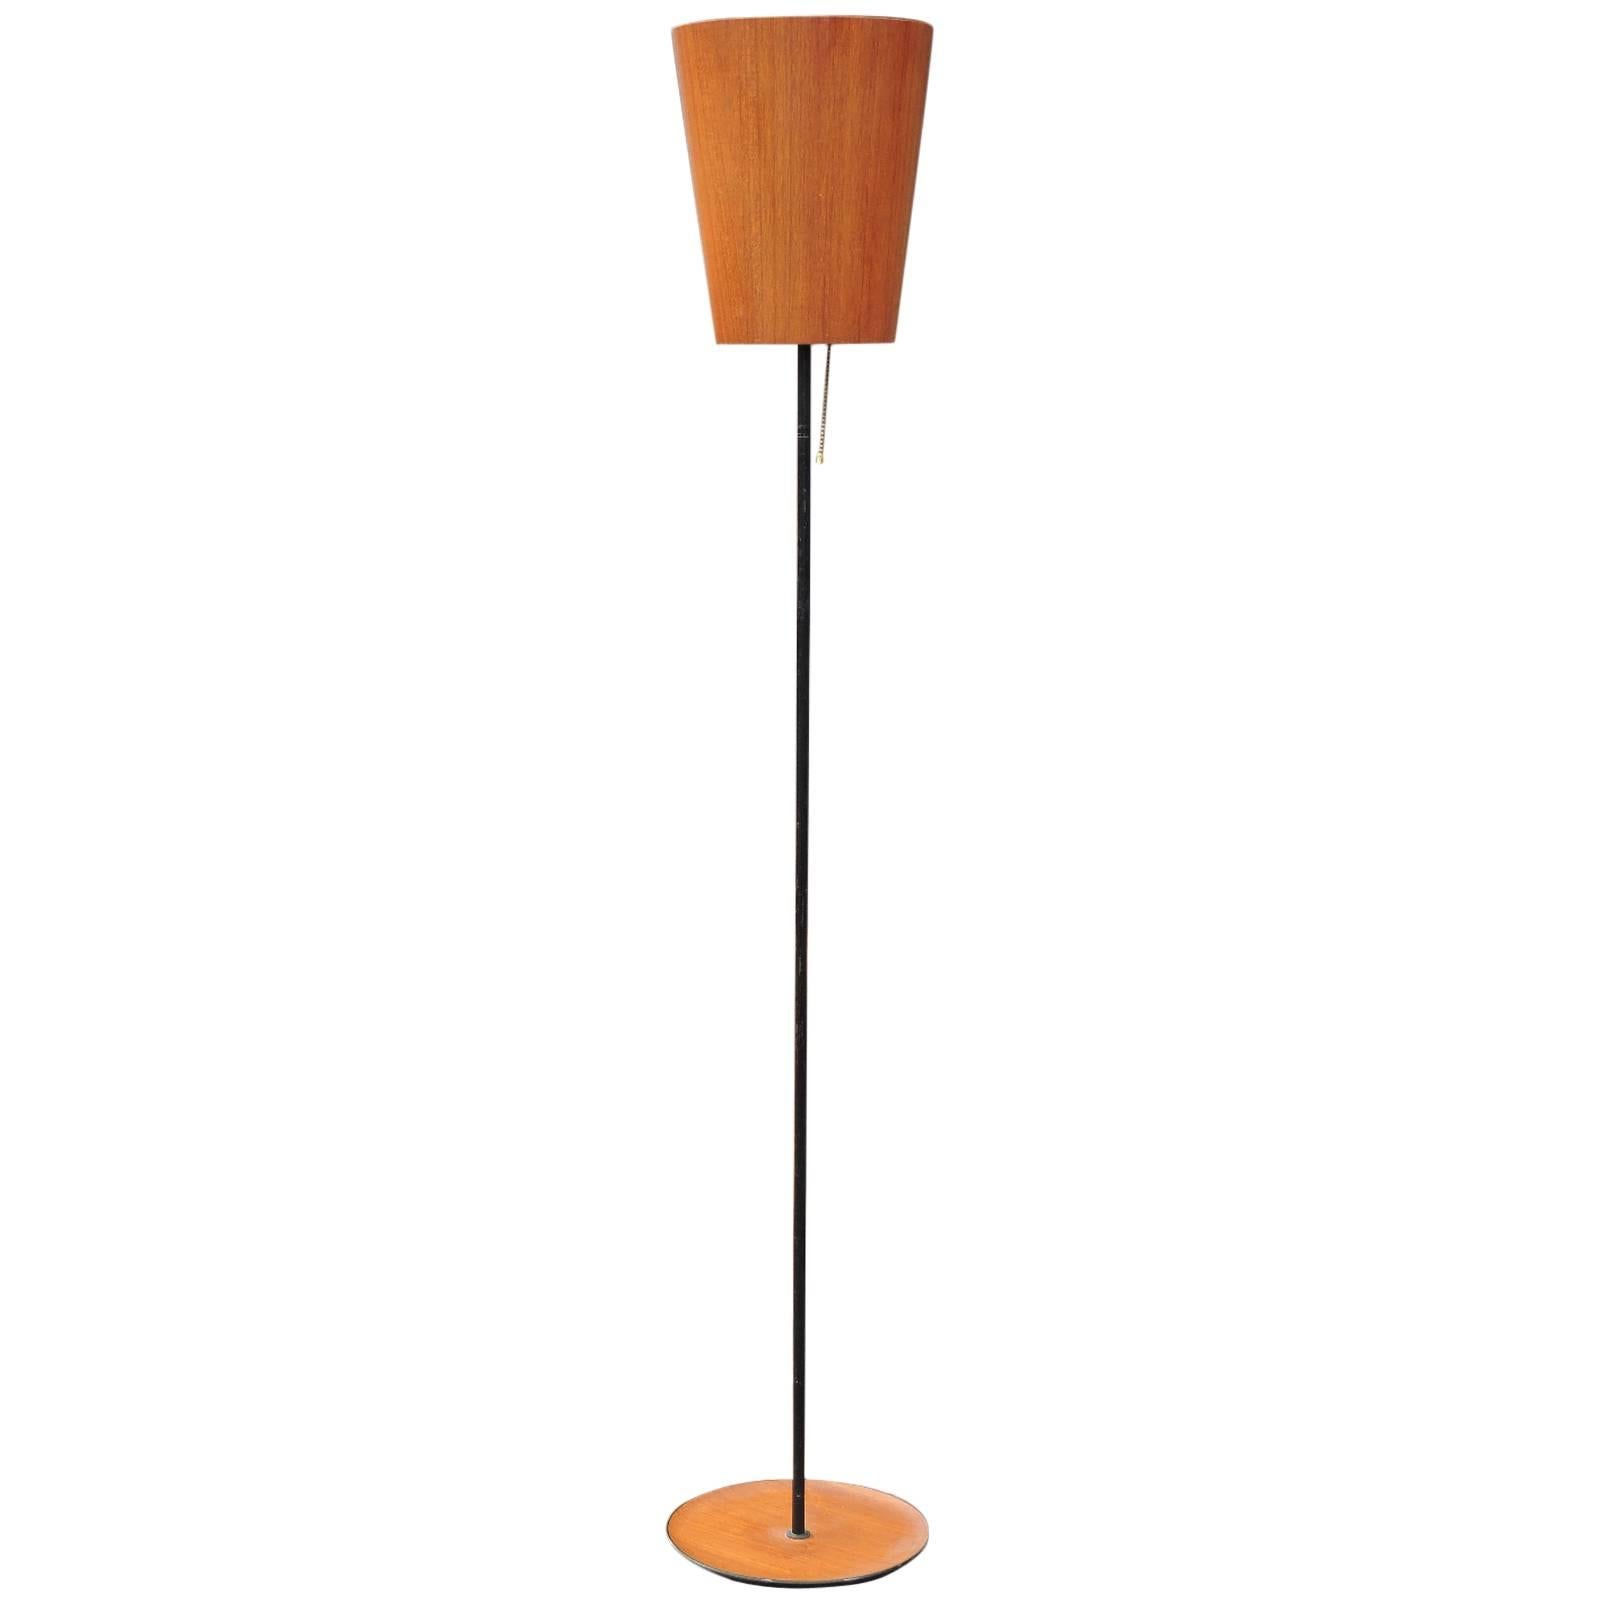  Scandinavian Teak & Iron Floor Lamp